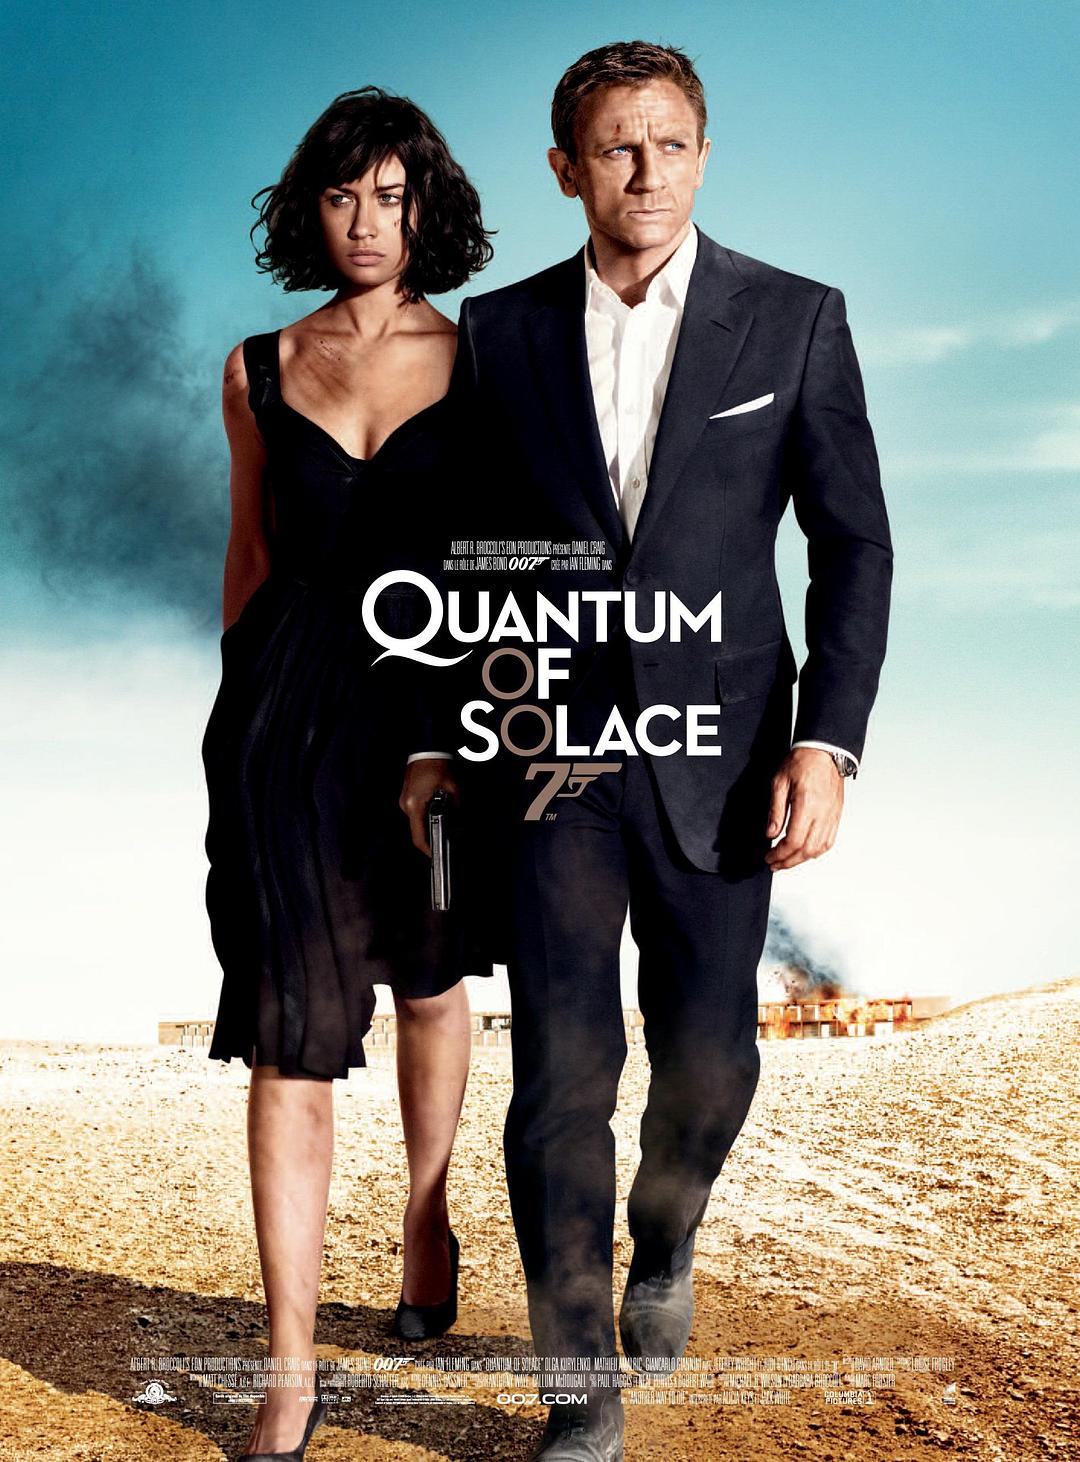 007:大破量子危机/007大破量子危机 Quantum.of.Solace.2008.2160p.BluRay.HEVC.DTS-HD.MA.5.1-COASTER 59.24GB-1.png